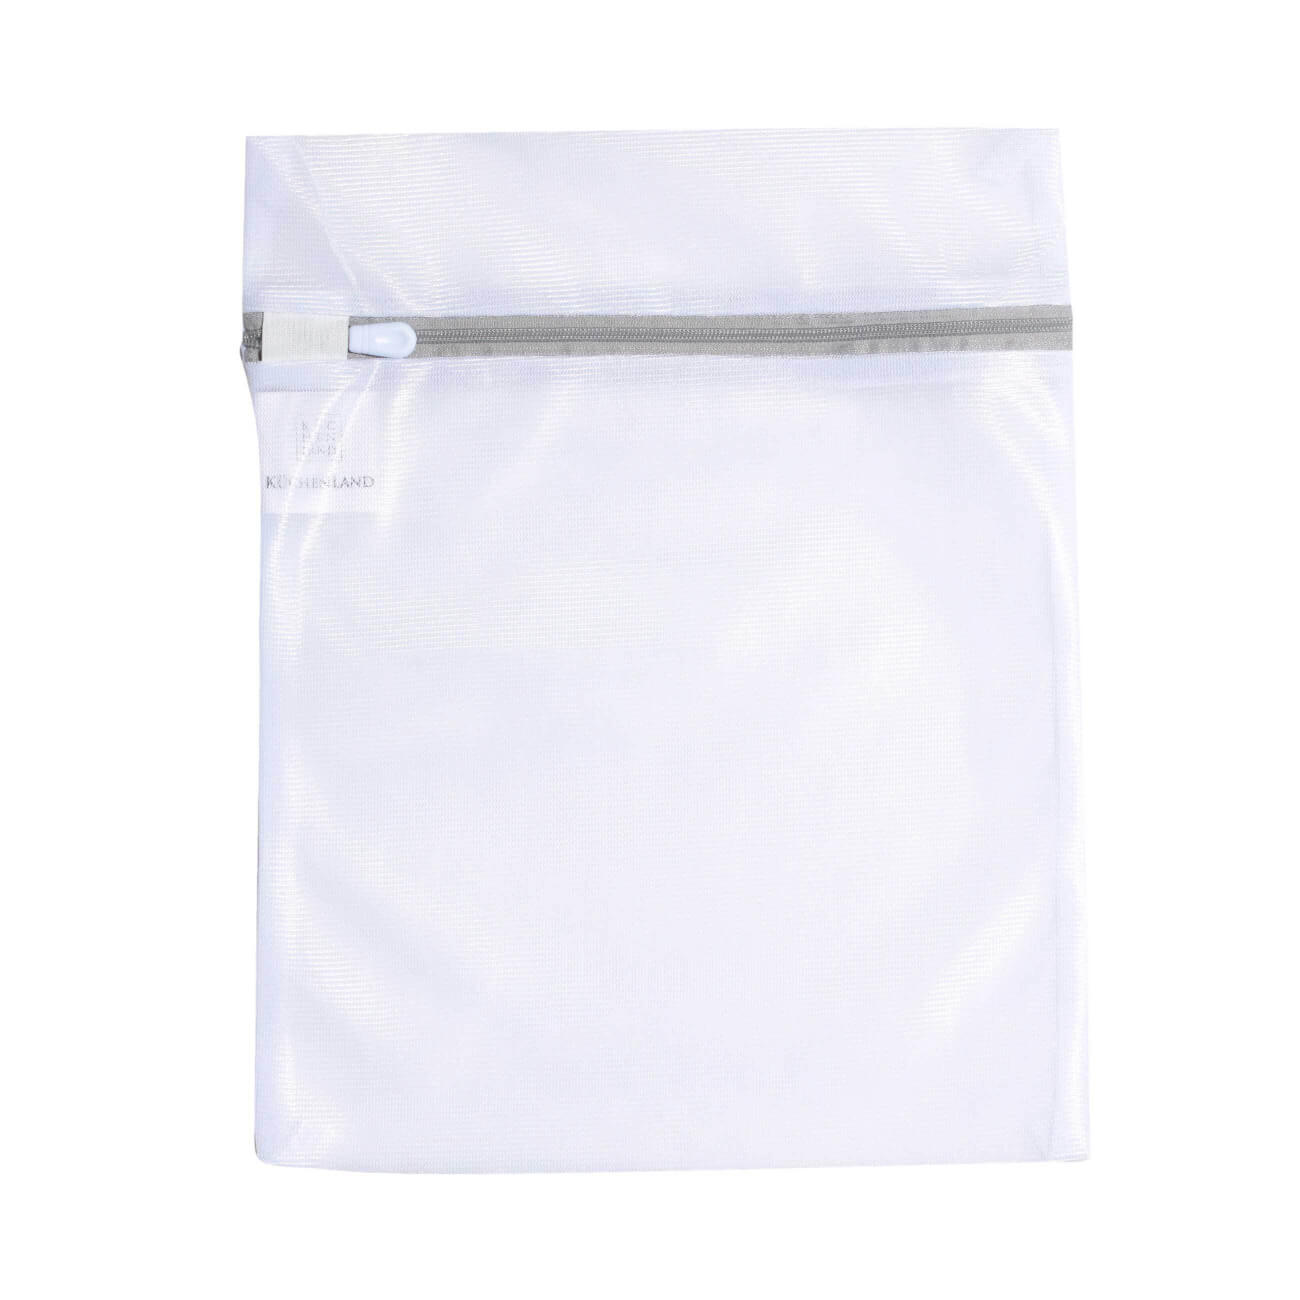 Мешок для стирки нижнего белья, 25х30 см, полиэстер, бело-серый, Safety plus изображение № 1